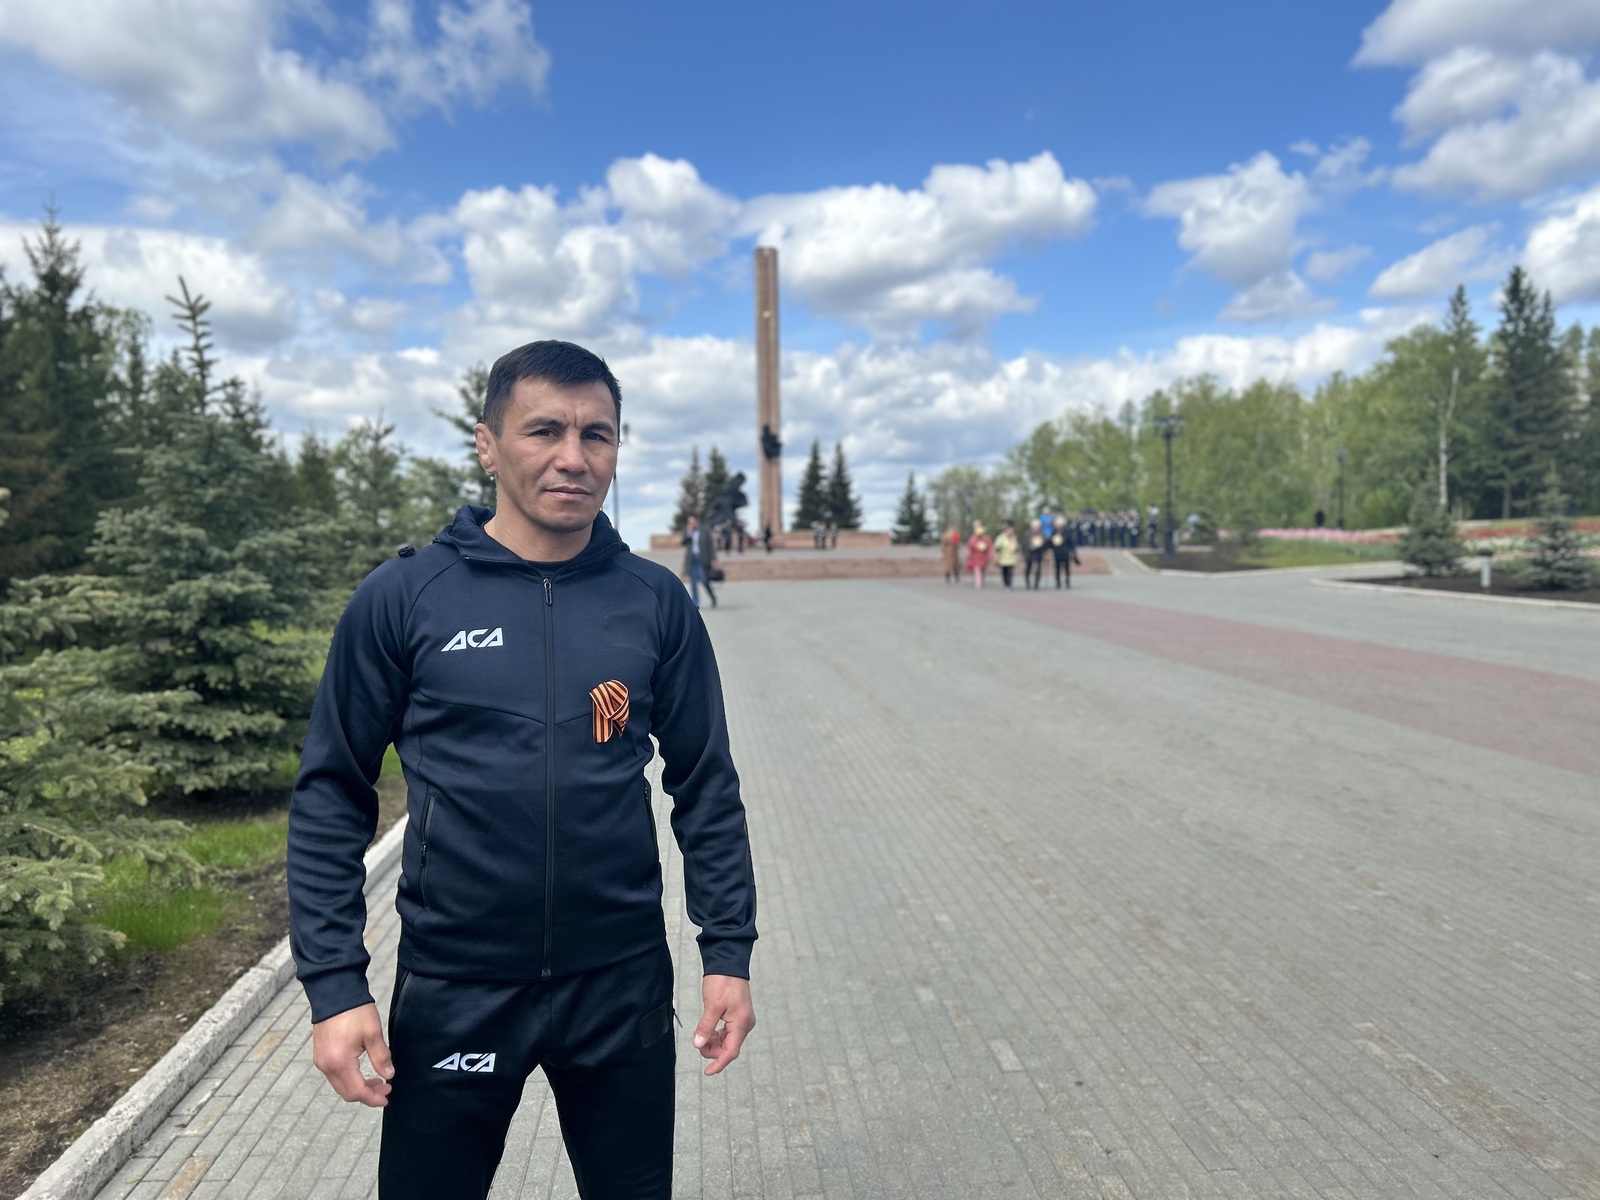 Легенда российского спорта Венер «Башкир» Галиев дал старт легкоатлетической эстафете в Уфе (видео)